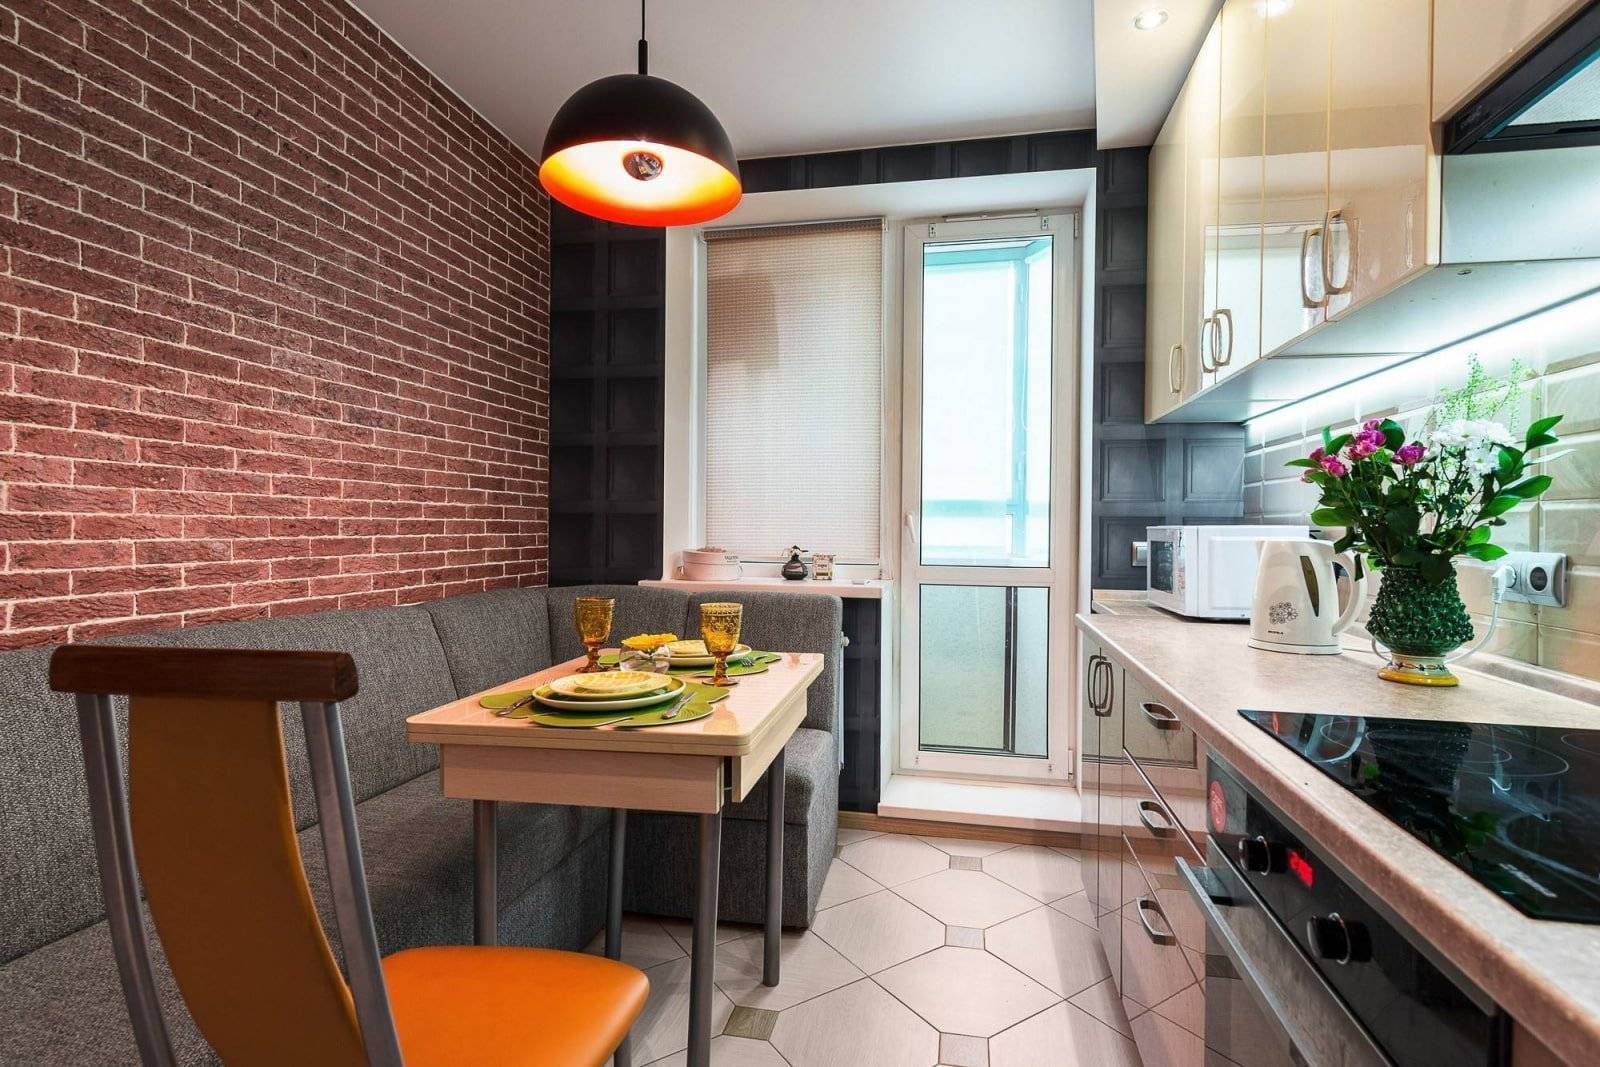 Дизайн кухни 10 кв м – фото дизайна и планировок кухонь площадью 10 метров